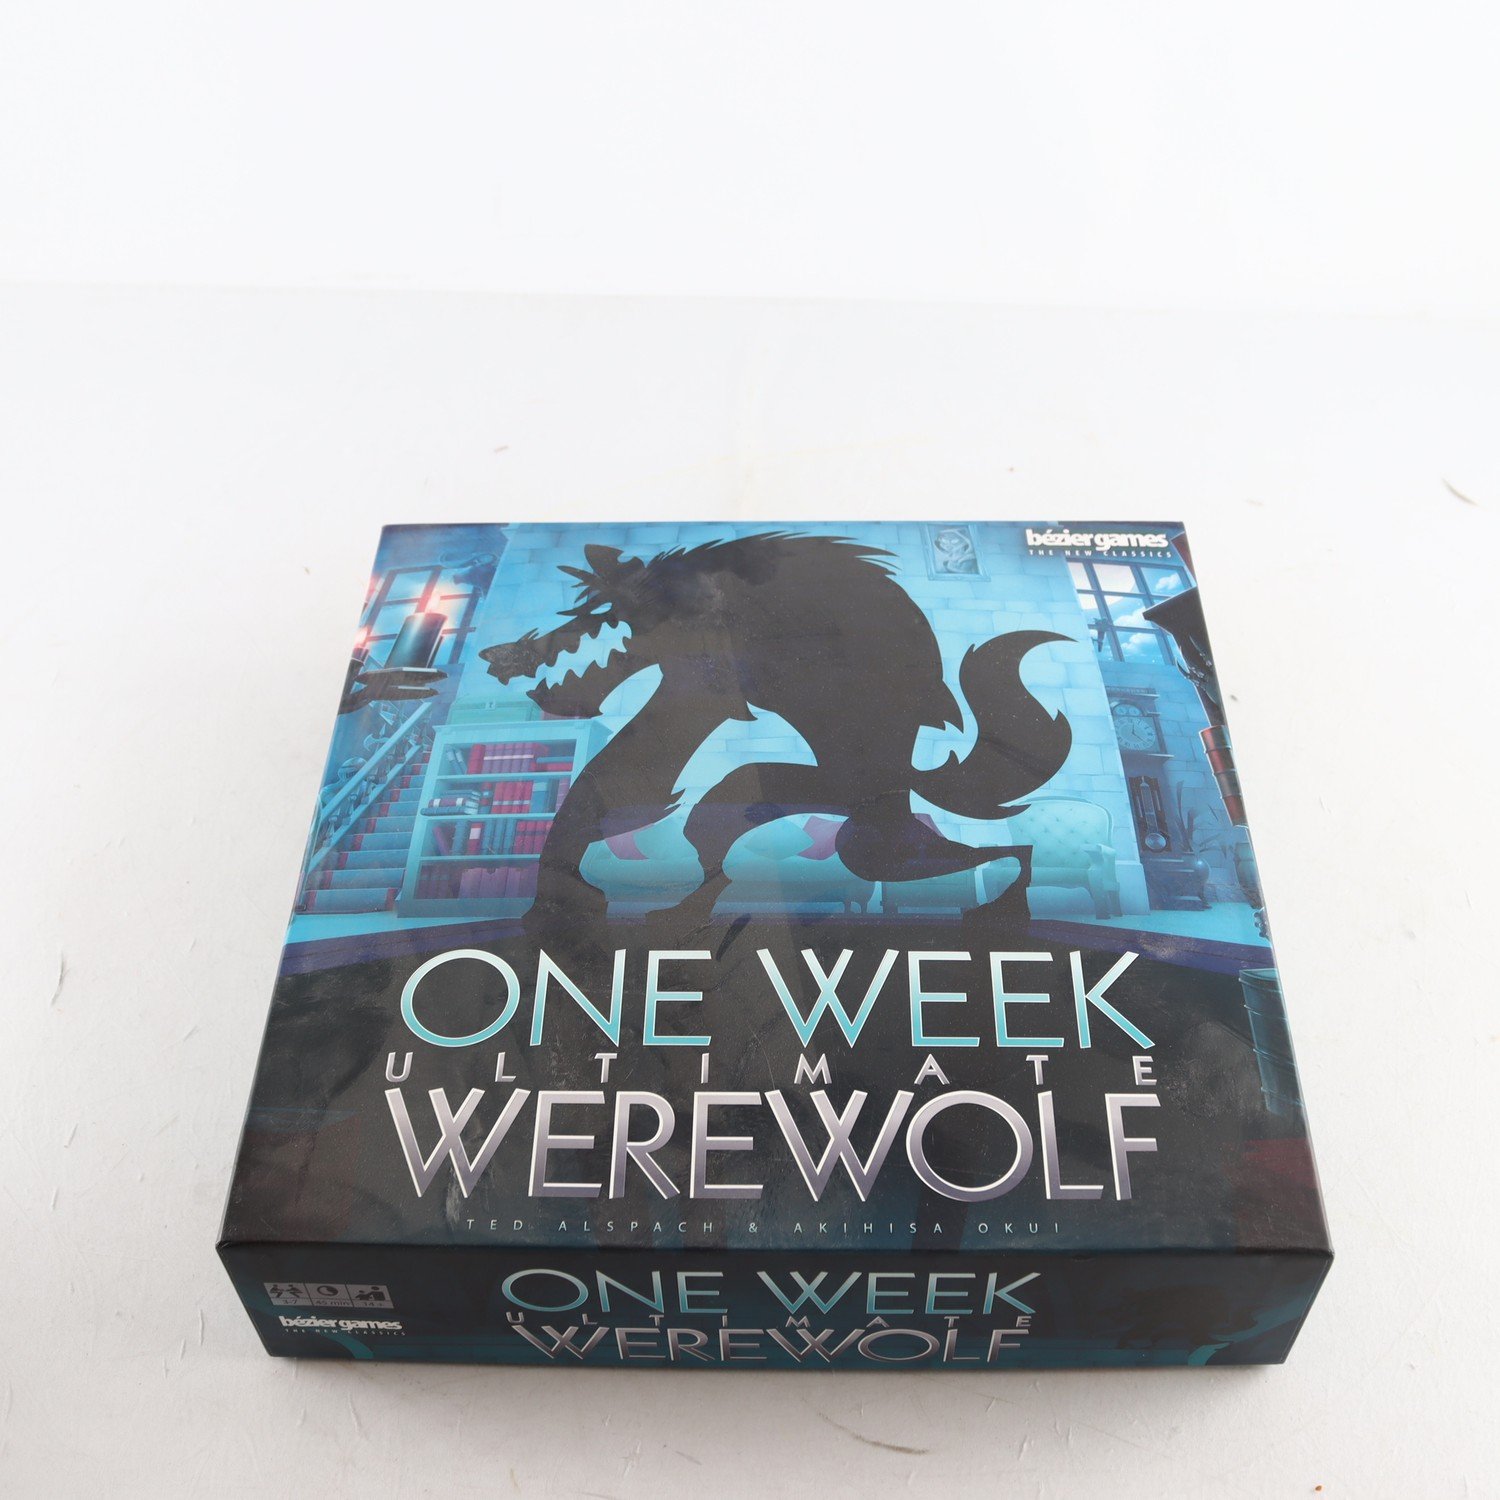 Spel, Ultimate werewolf, bezier games.